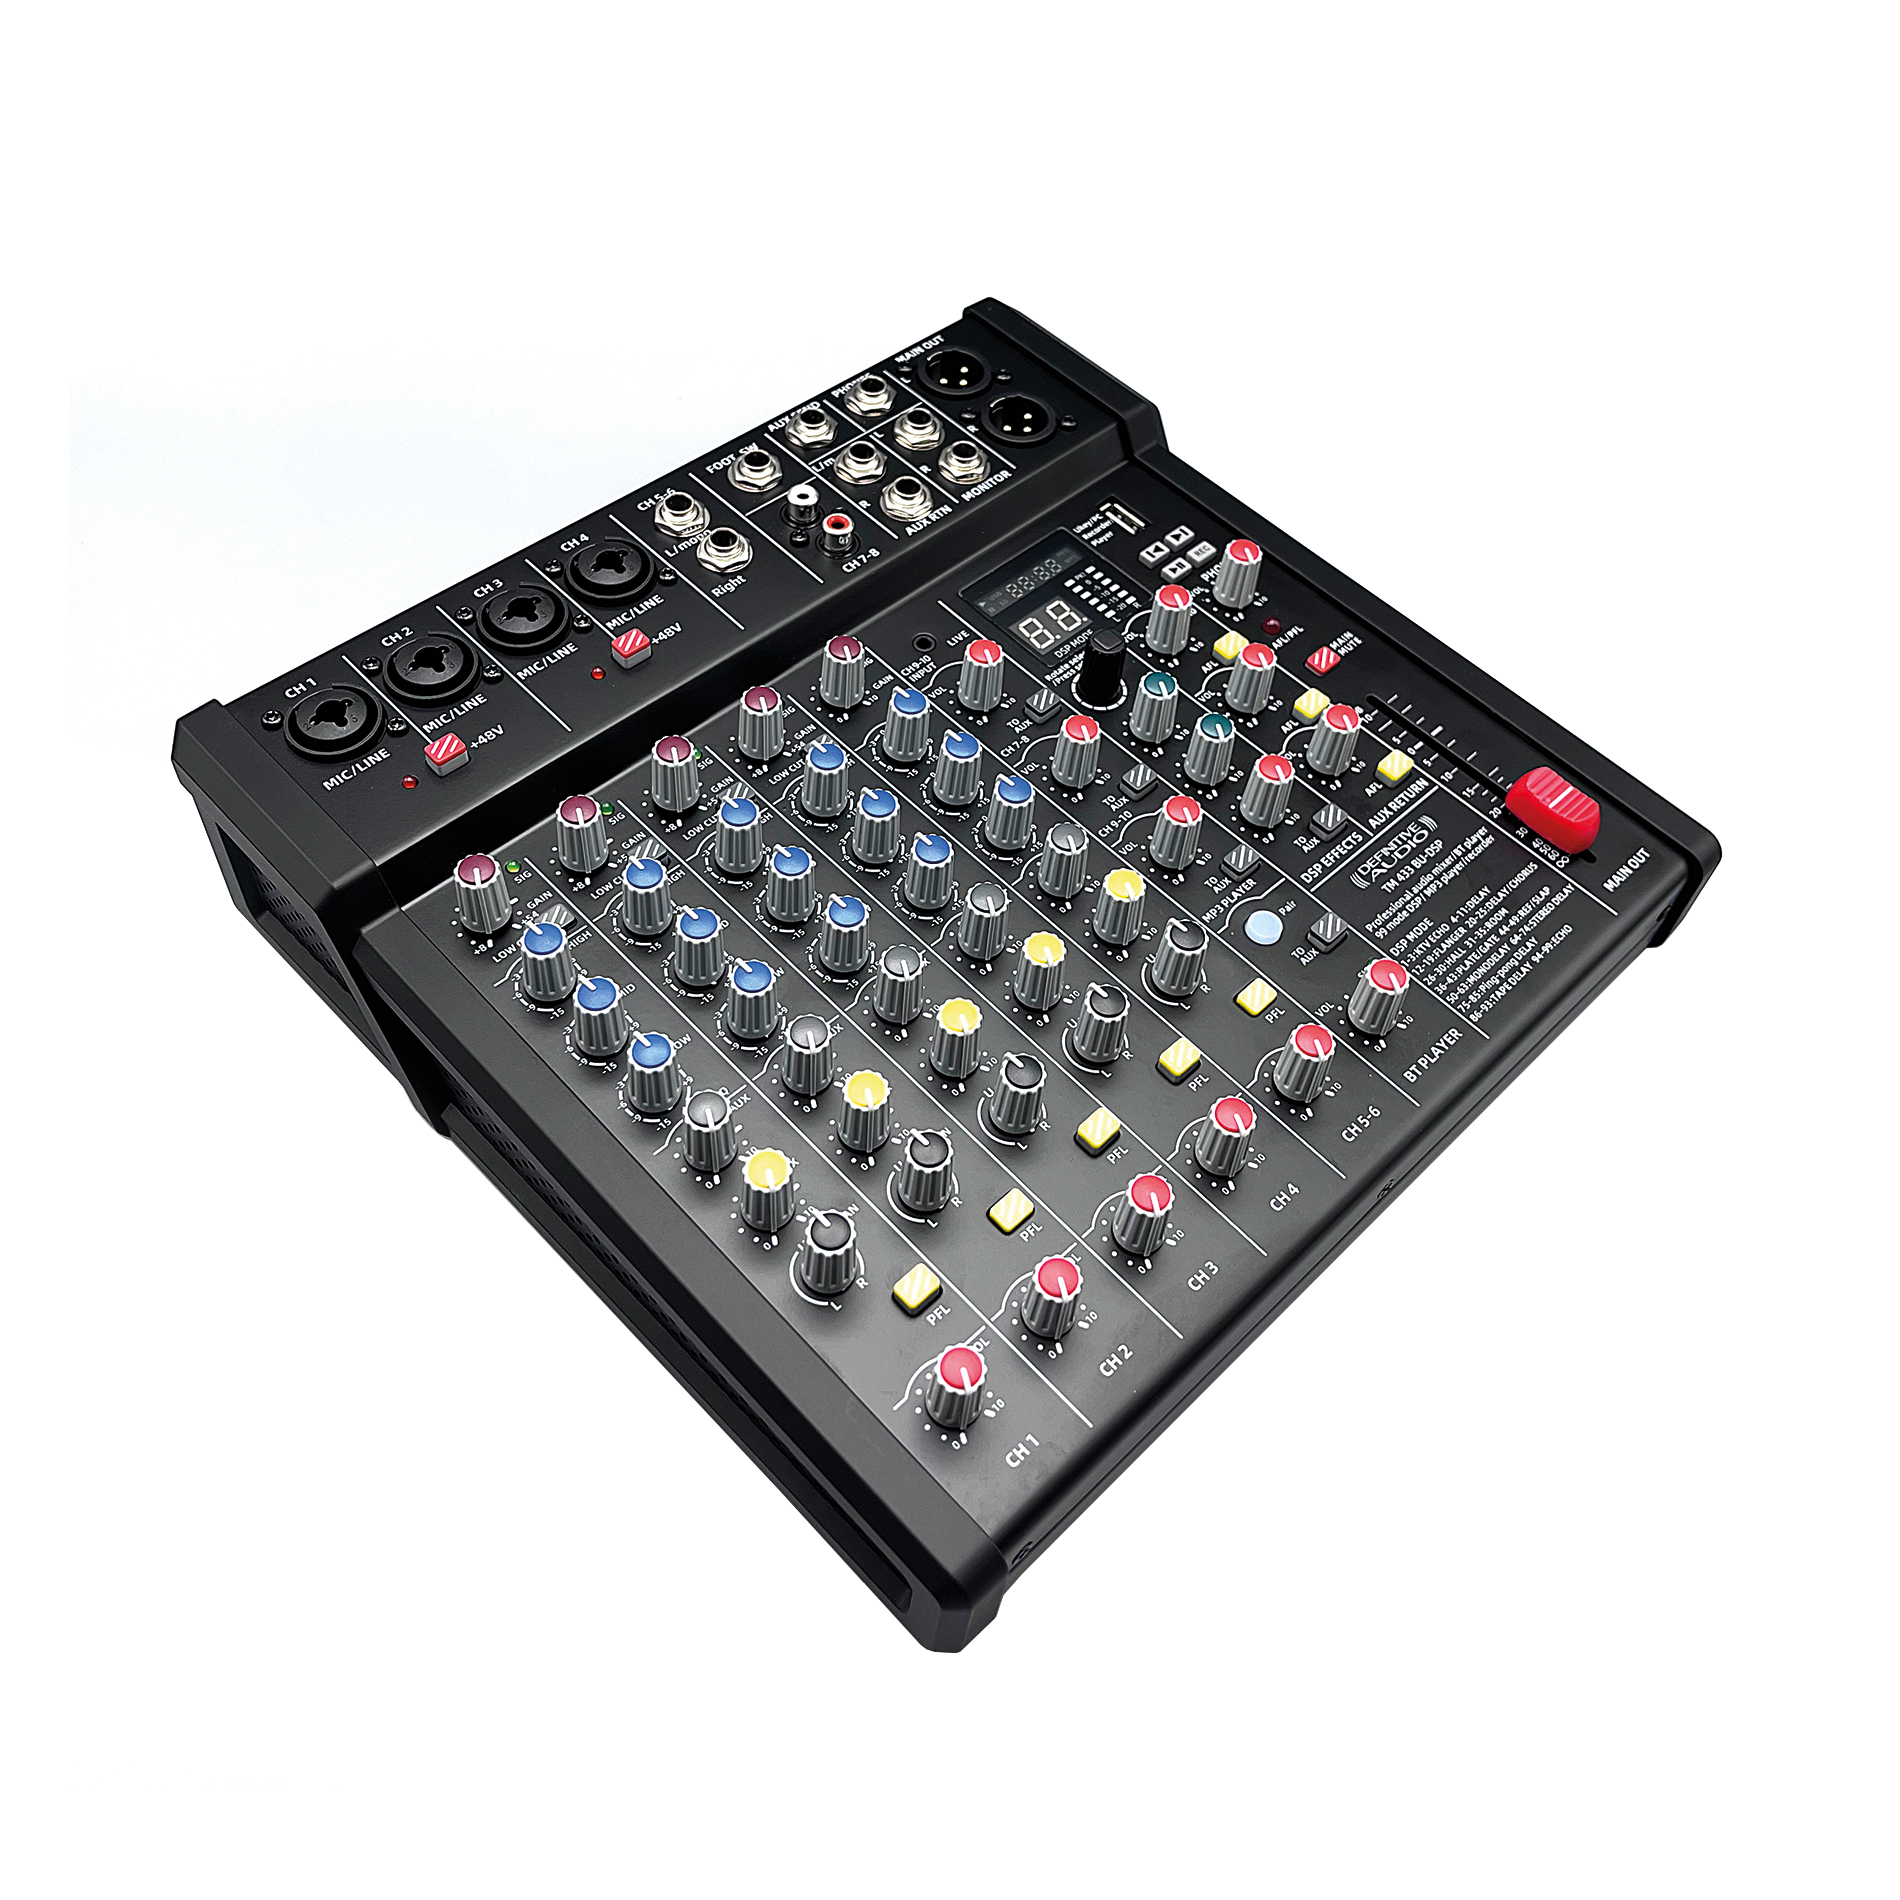 Definitive Audio Tm 433 Bu-dsp - Table De Mixage Analogique - Variation 6